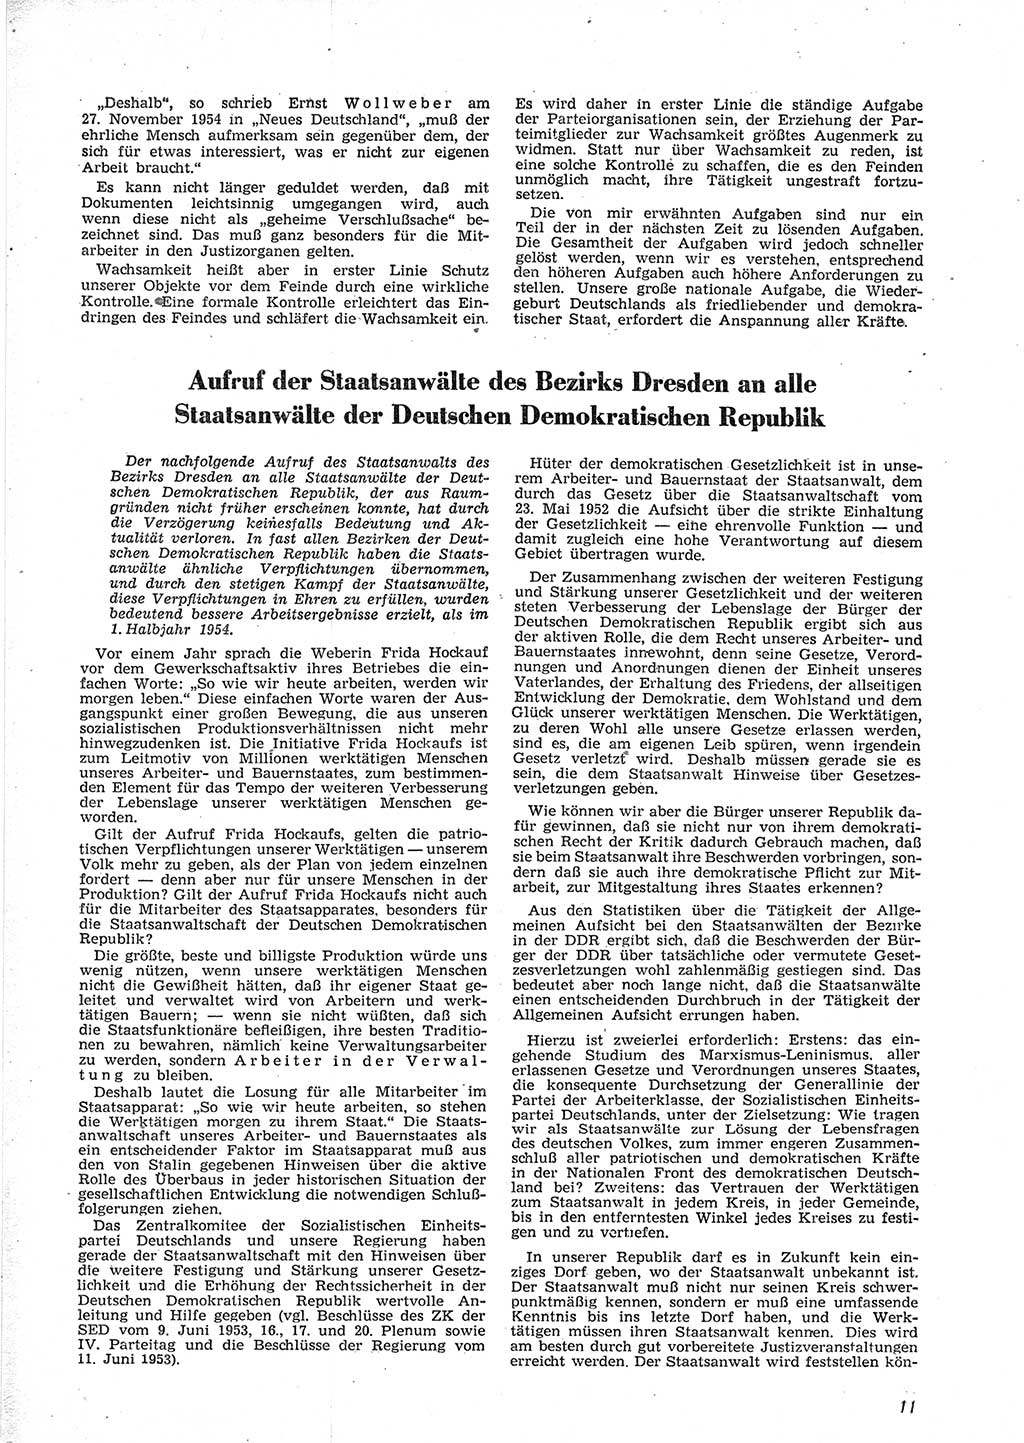 Neue Justiz (NJ), Zeitschrift für Recht und Rechtswissenschaft [Deutsche Demokratische Republik (DDR)], 9. Jahrgang 1955, Seite 11 (NJ DDR 1955, S. 11)